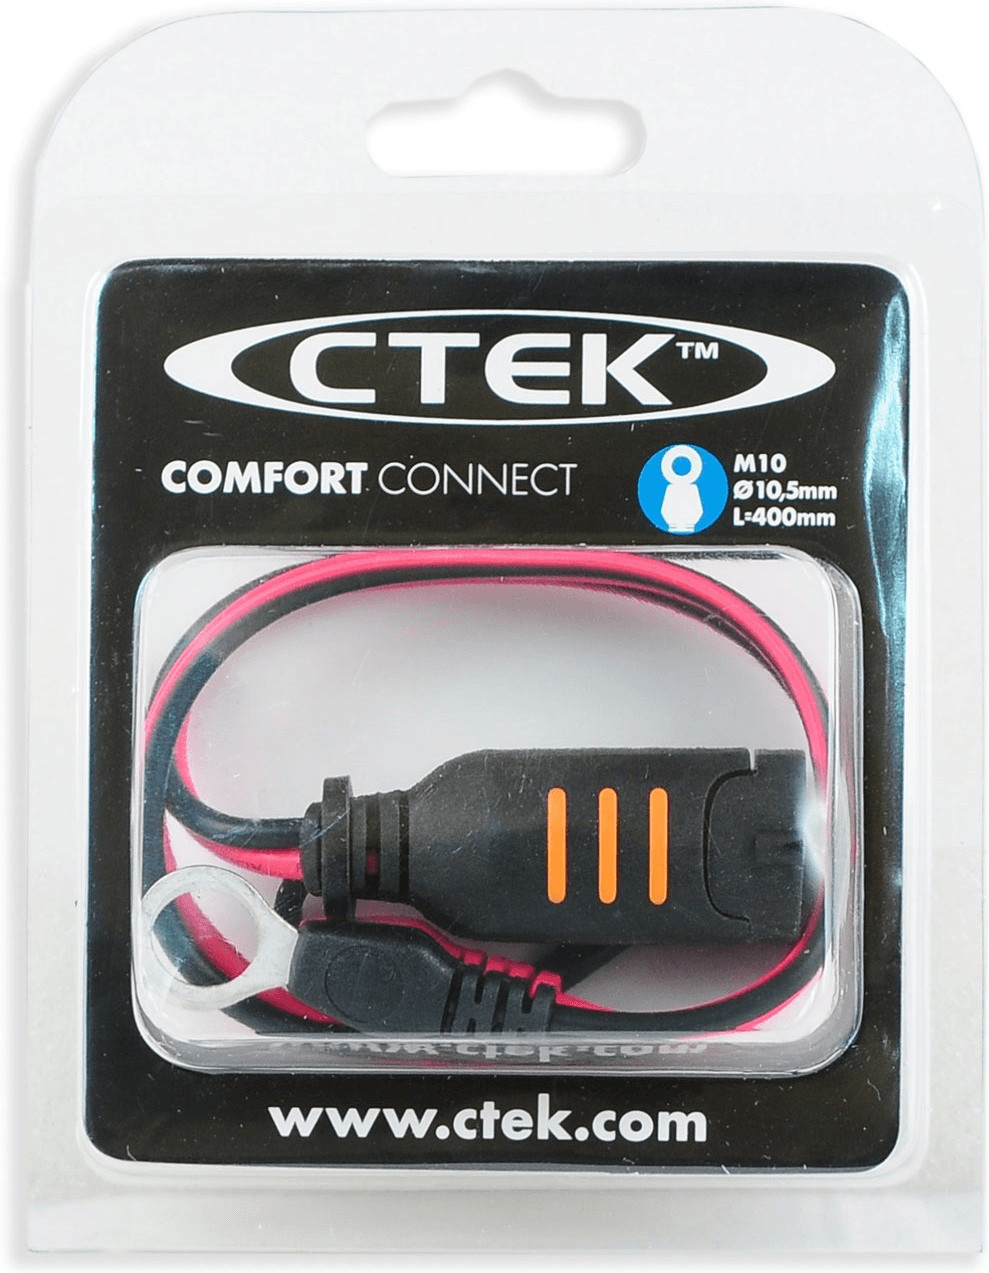 CTEK Connect Eyelet Kabel mit Öse M6 für schnelles und einfaches